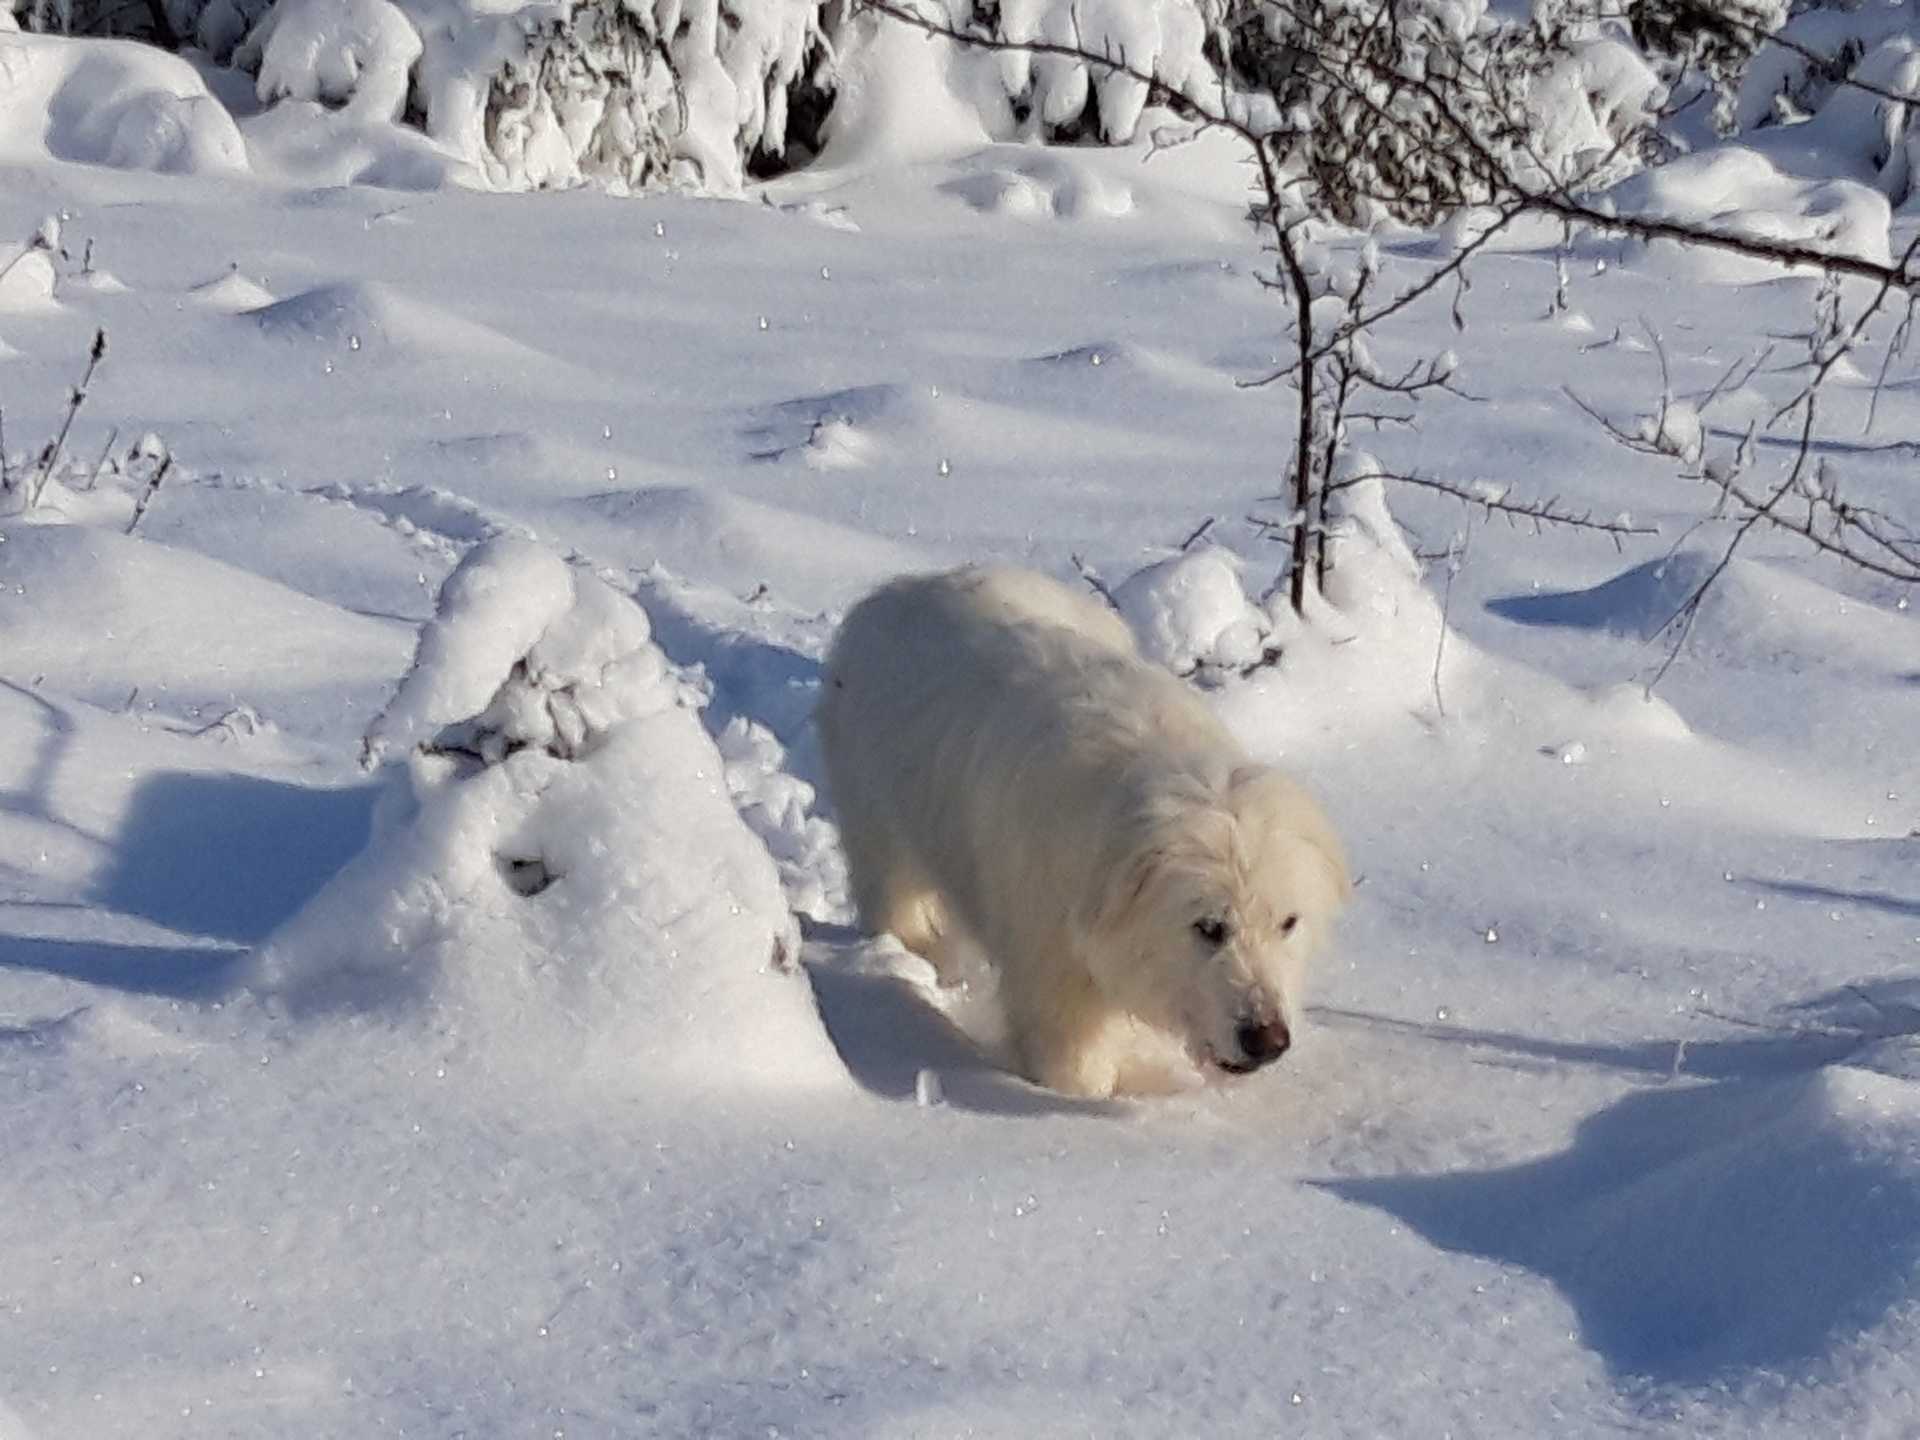 Snowy Babu, our first dog